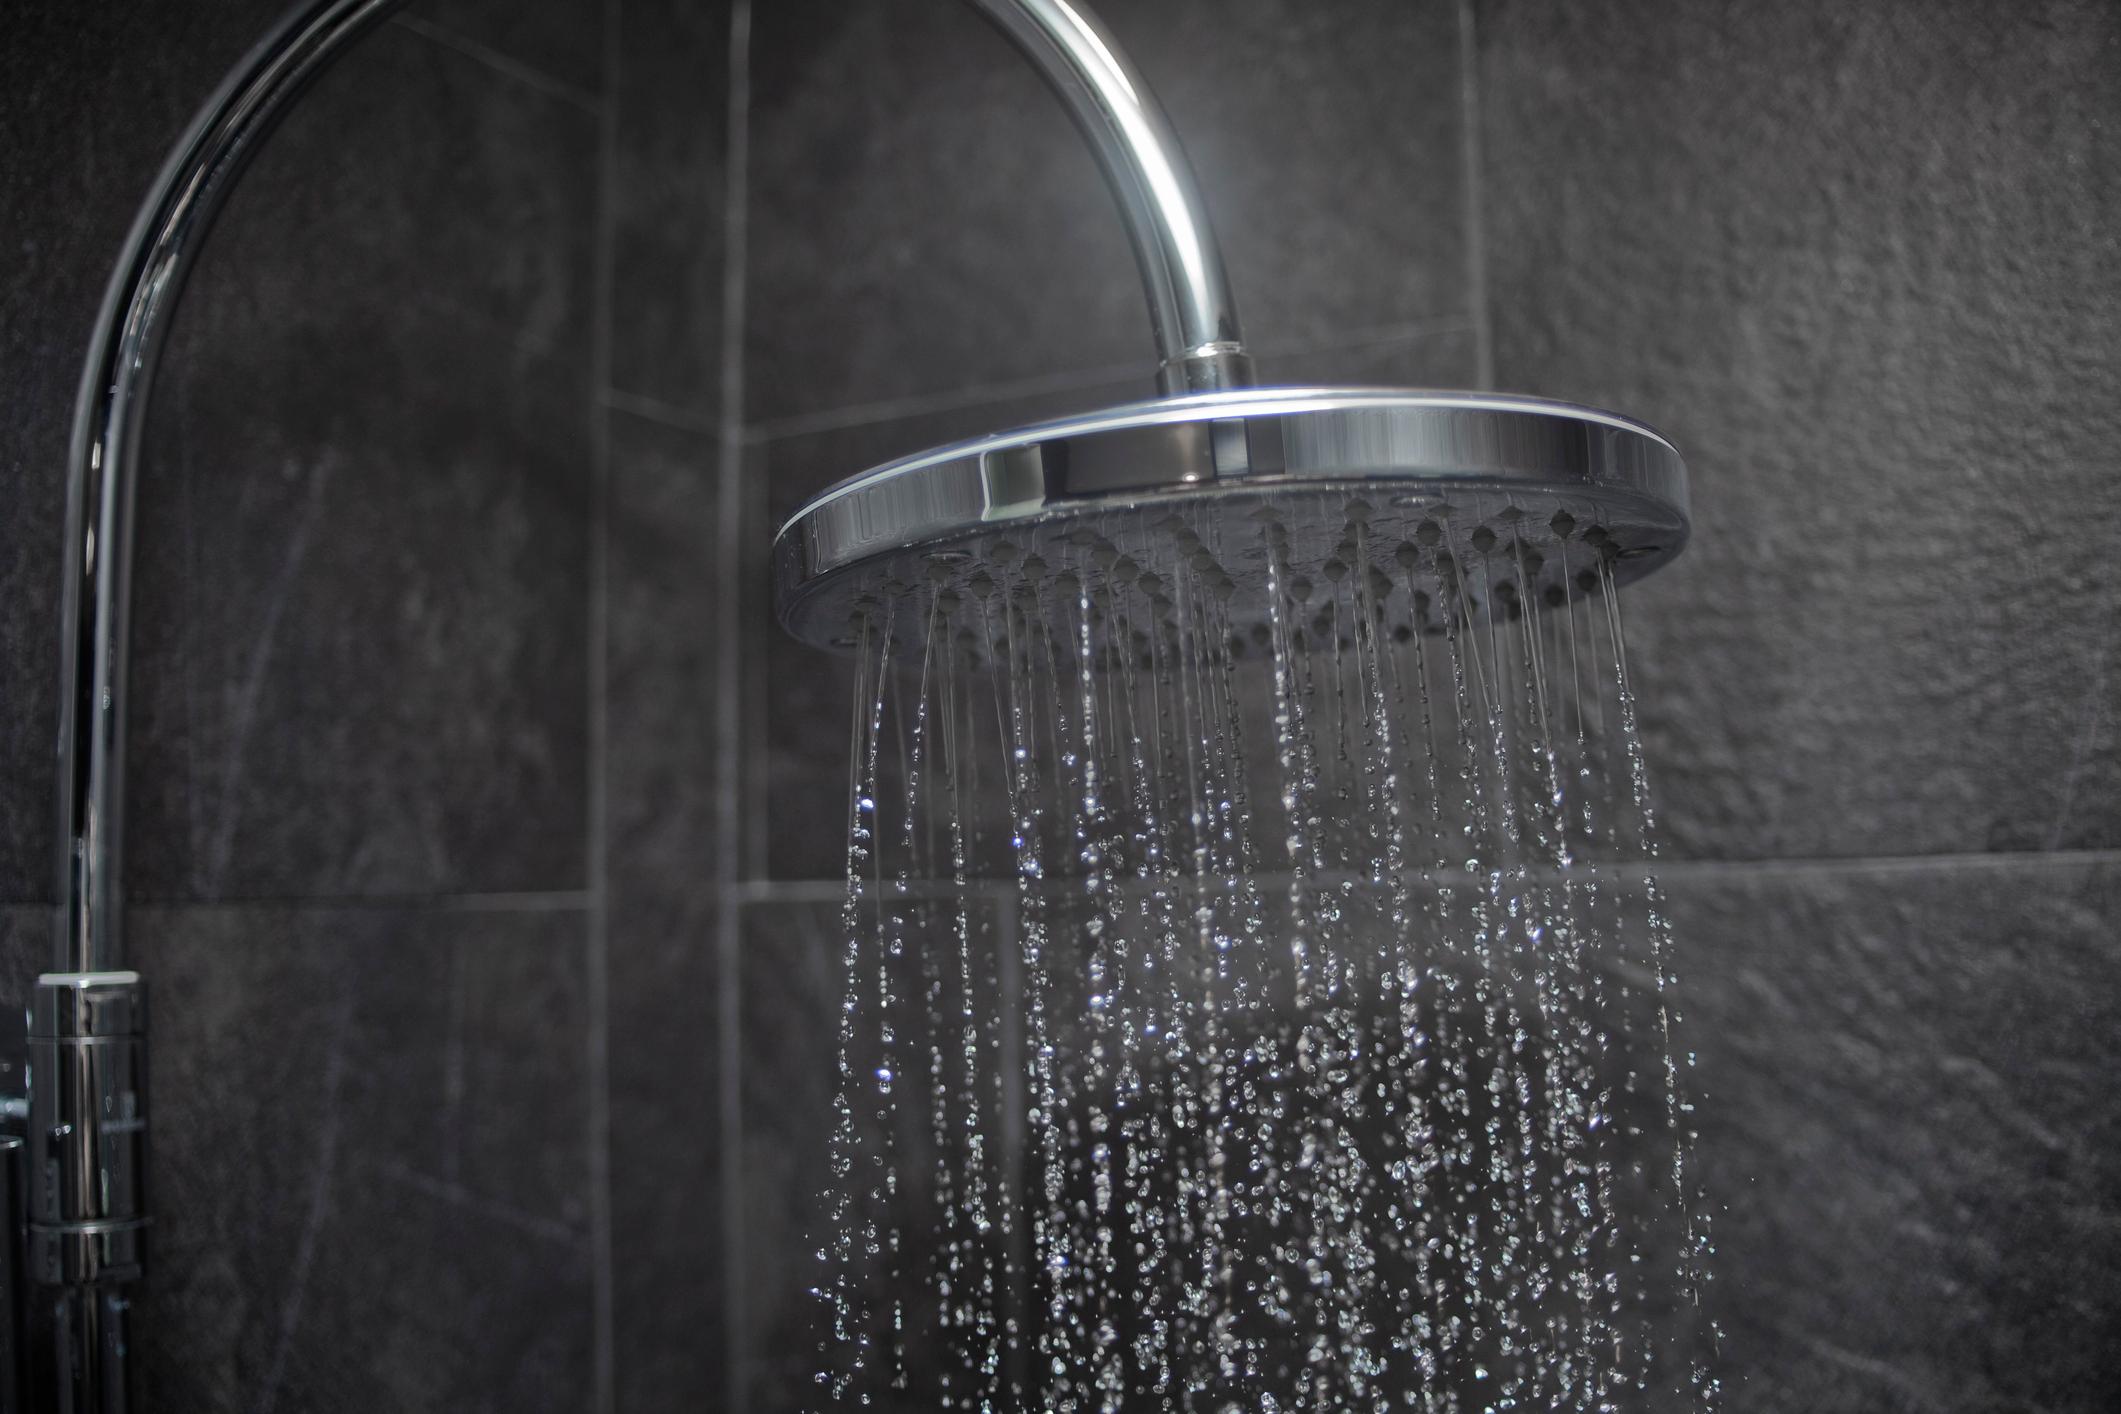  Systeme für die Warmwasserbereitung ermöglichen temperiertes Duschen in Sommer und Winter